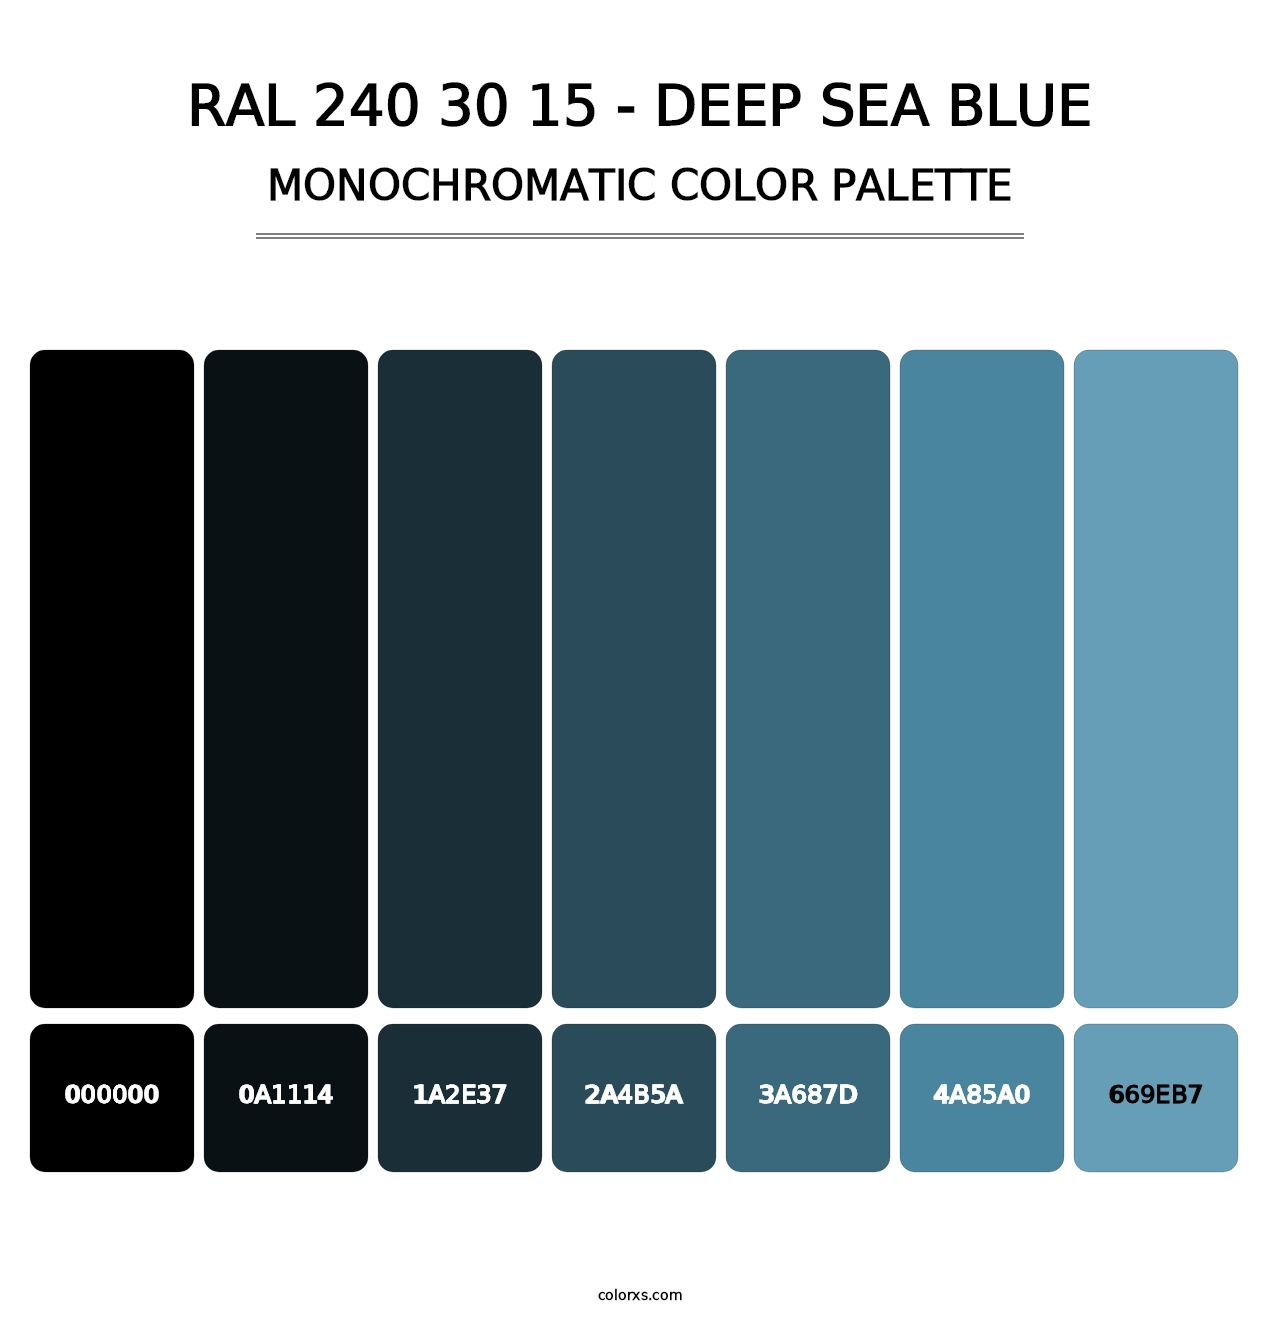 RAL 240 30 15 - Deep Sea Blue - Monochromatic Color Palette